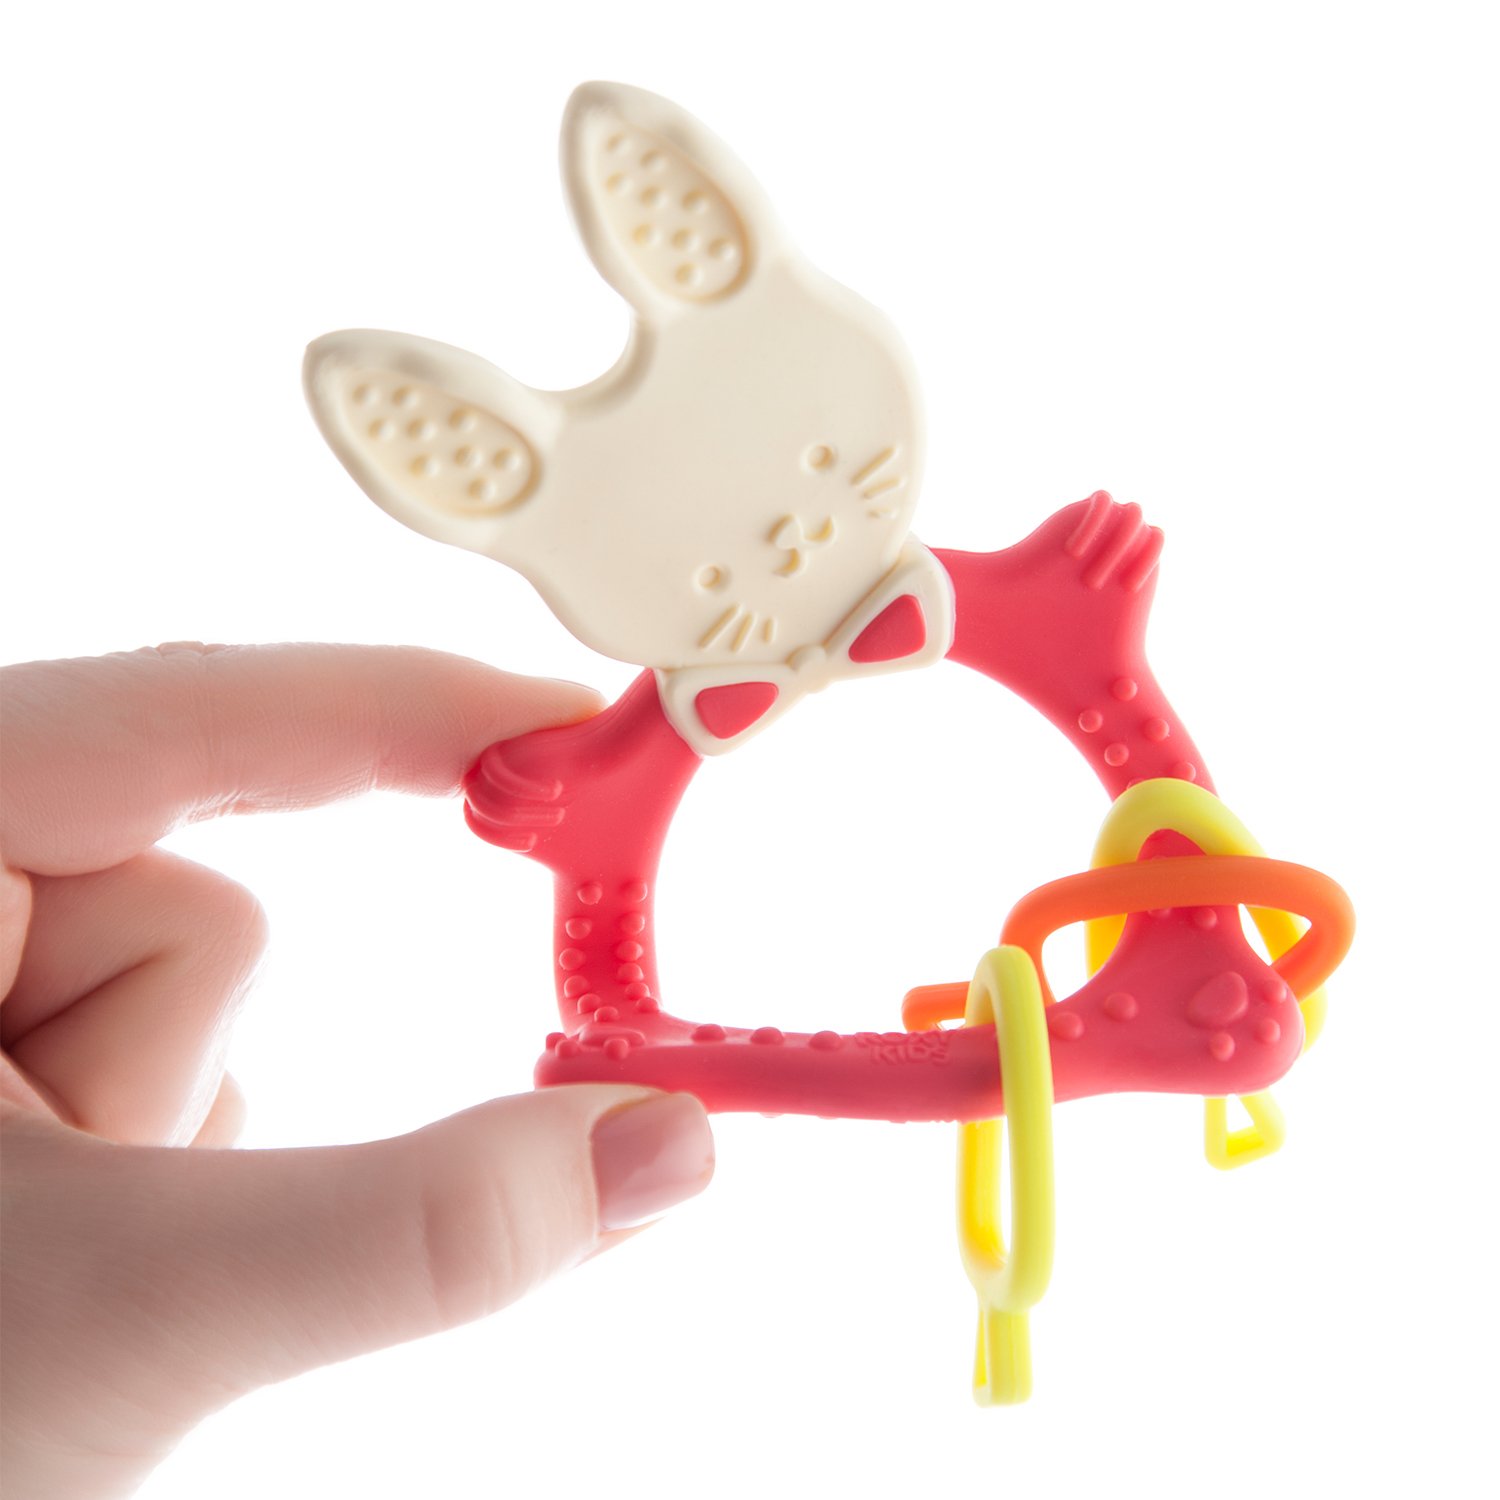 Прорезыватель для зубов ROXY-KIDS Bunny teether цвет коралловый - фото 8